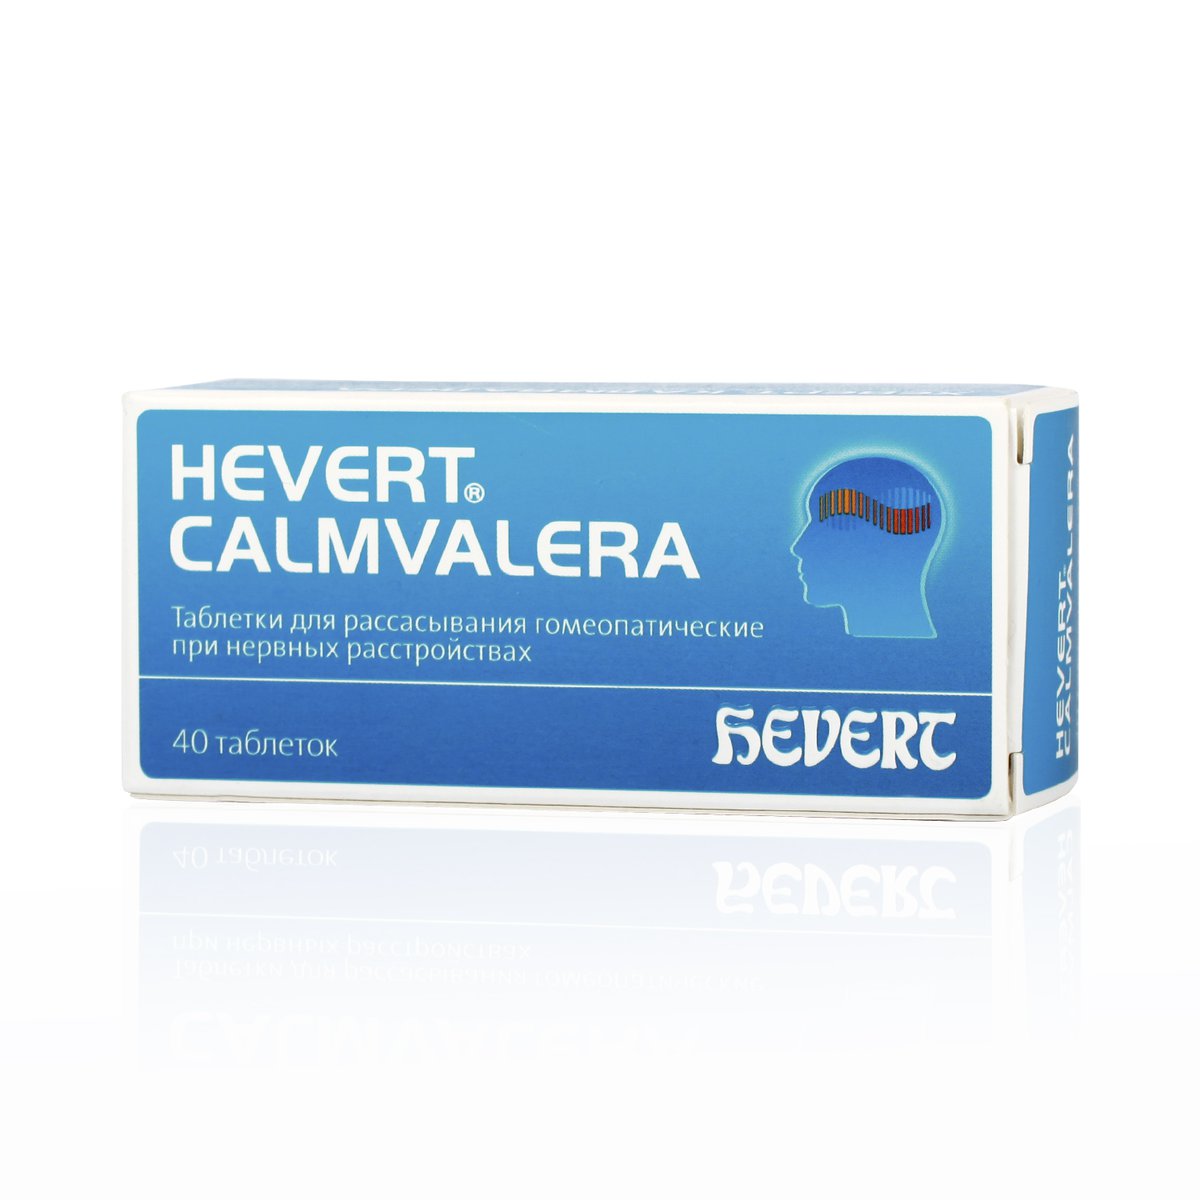 Хеверт калмвалера (таблетки, 40 шт, для рассасывания) - цена,  .